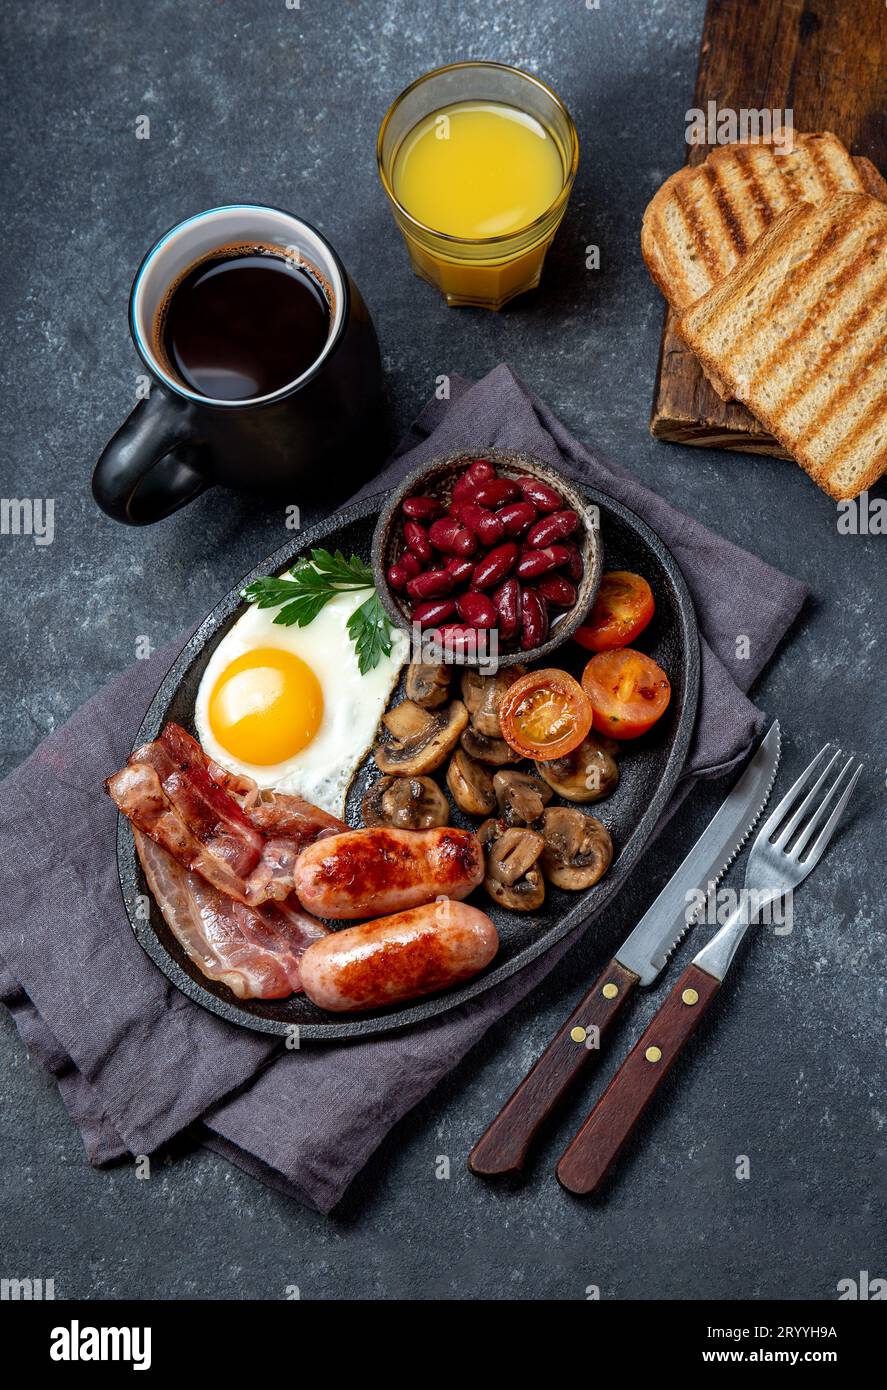 Englisches Frühstück mit Spiegeleiern, Würstchen, Speck, Pudding, Bohnen, Toast und Kaffee, dunkler Hintergrund Stockfoto